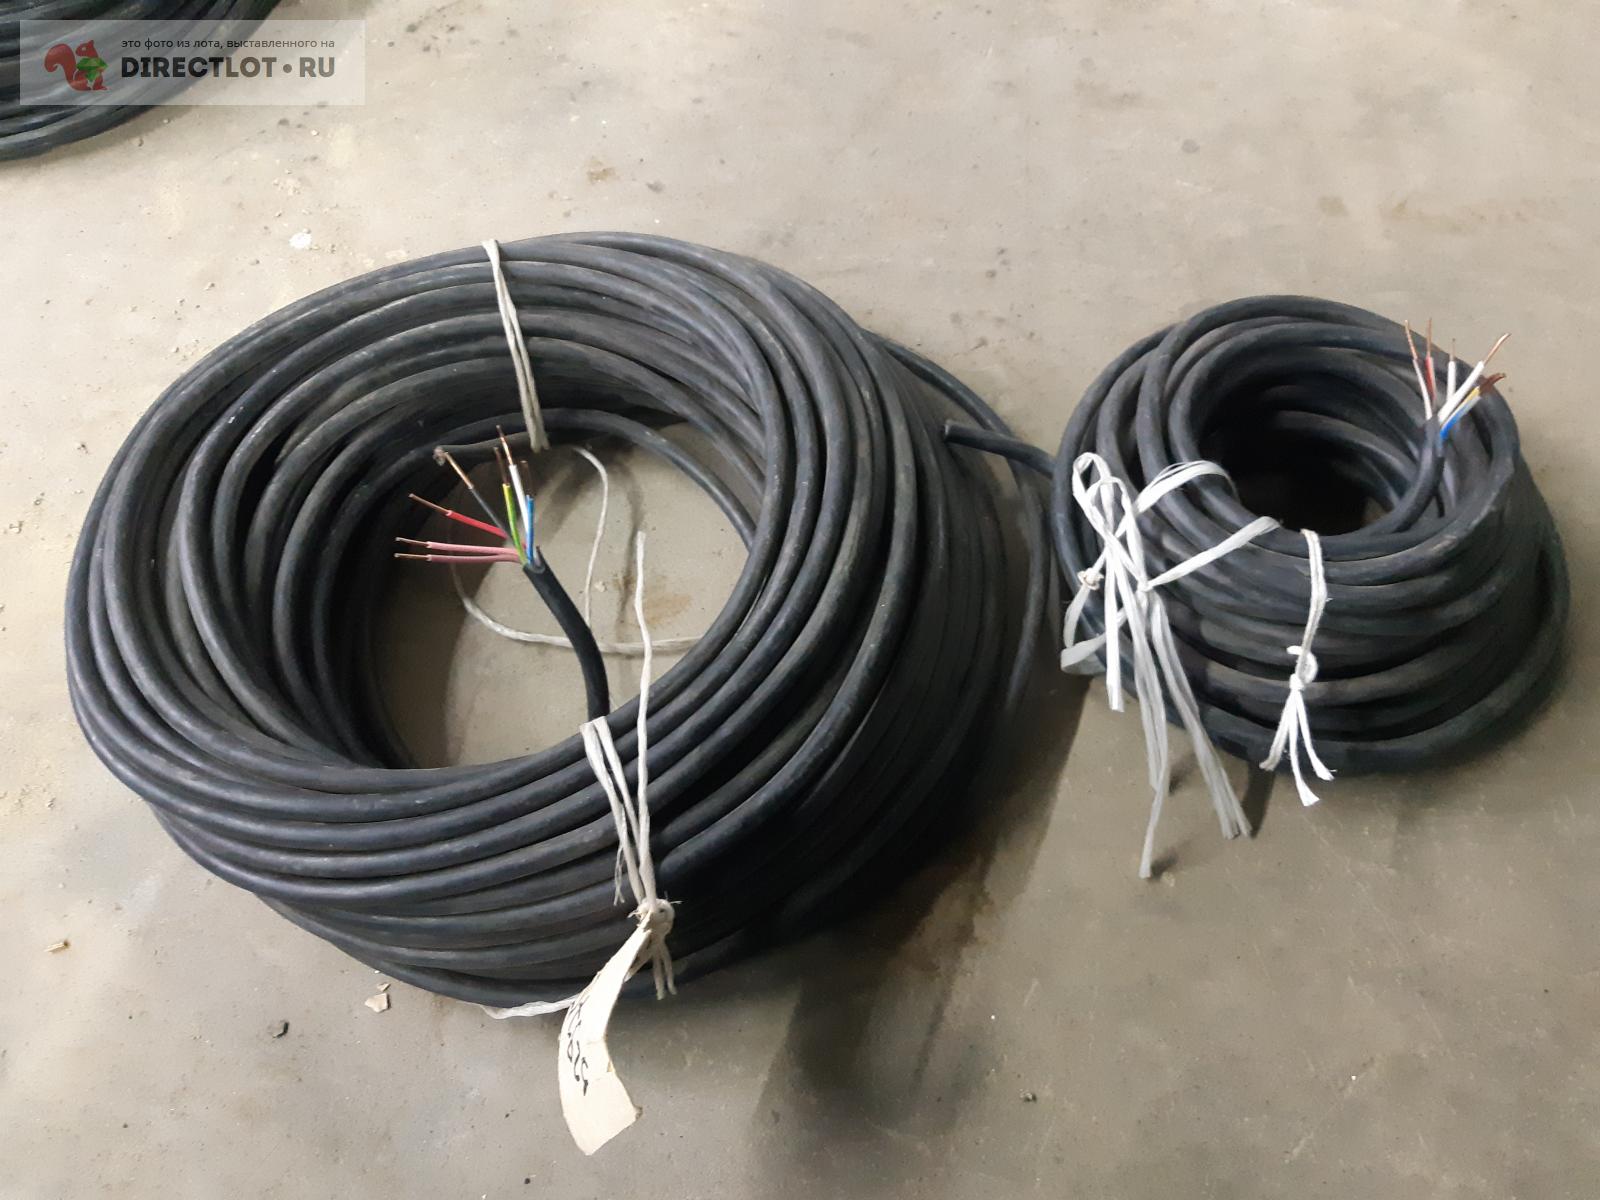 кабель медный ввг 7х2.5  в Орле цена 130 Р на DIRECTLOT.RU .